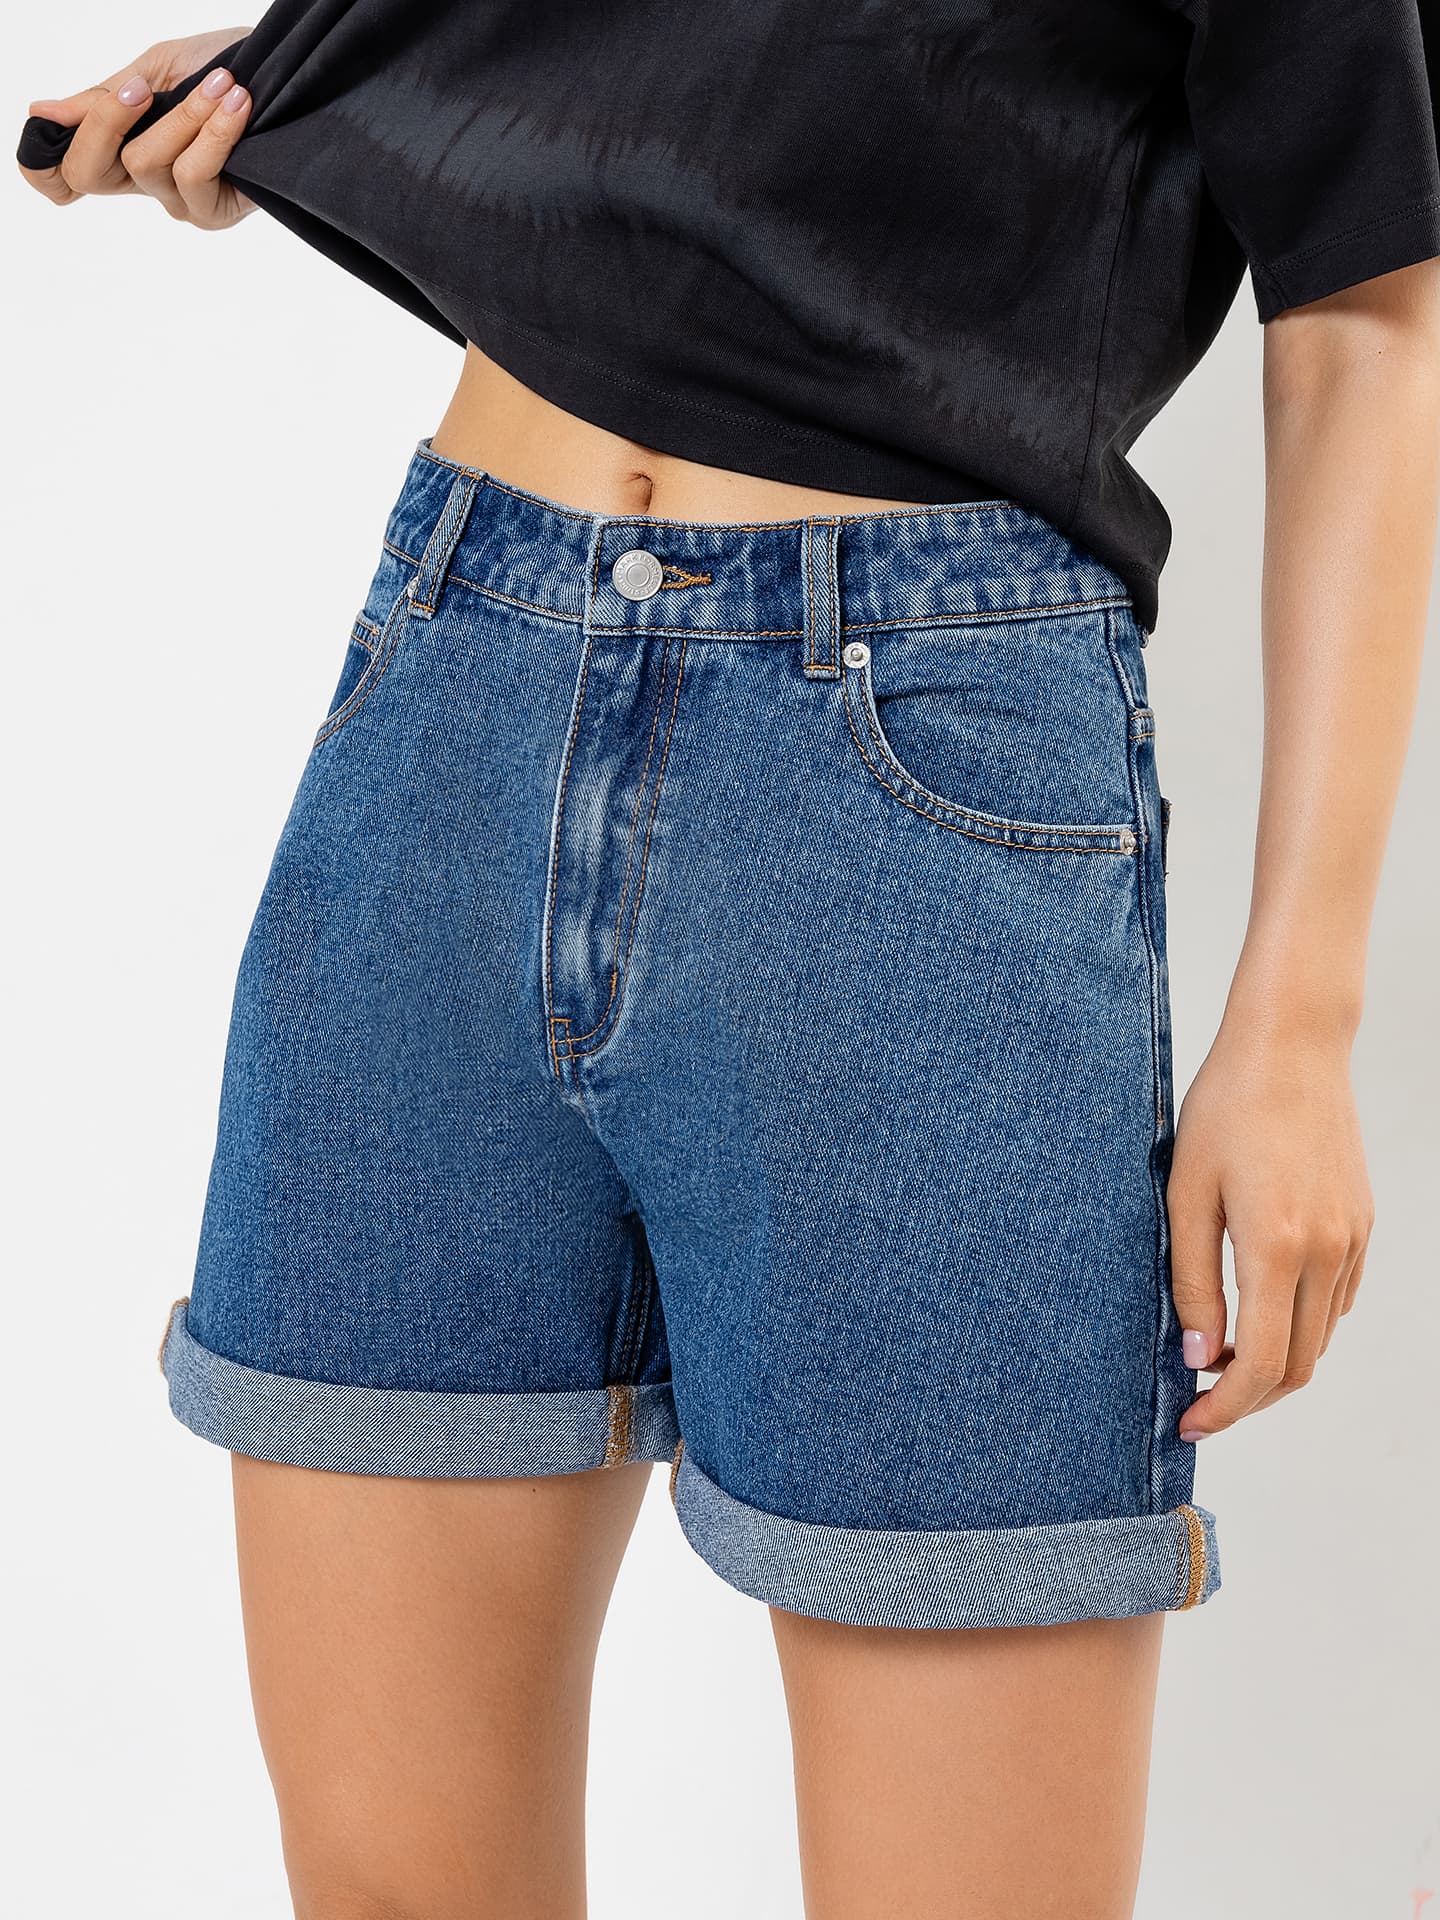 Джинсовые женские шорты: модные тенденции лета